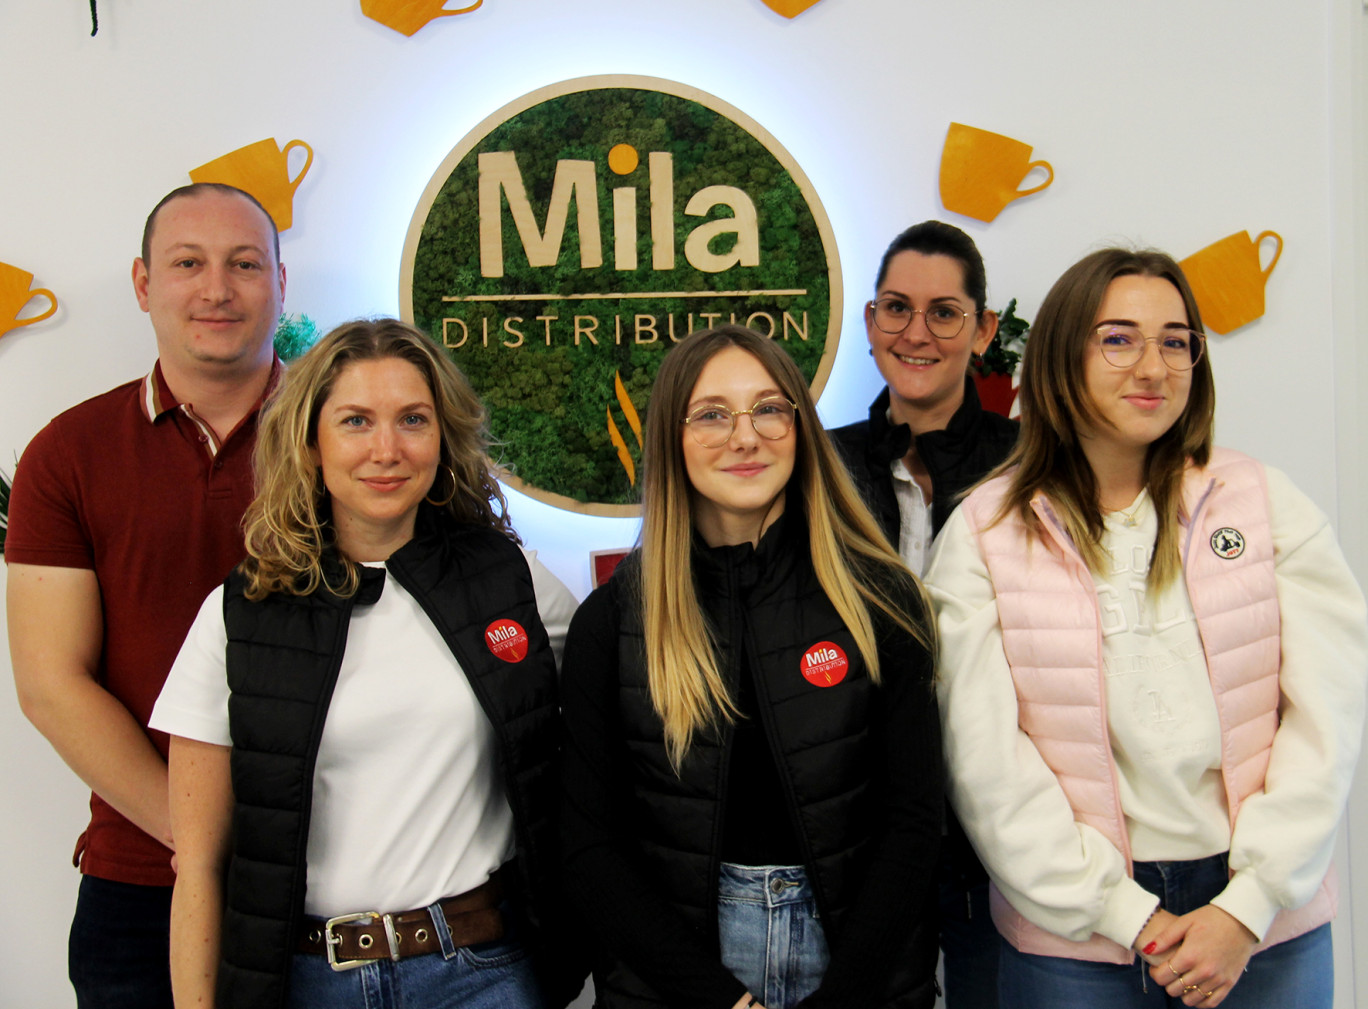  Toute l’équipe de Mila Distribution sera sur le pont, le 13 juin prochain, à l’occasion de la première journée portes ouvertes de l’entreprise dans ses locaux d’Heillecourt. 